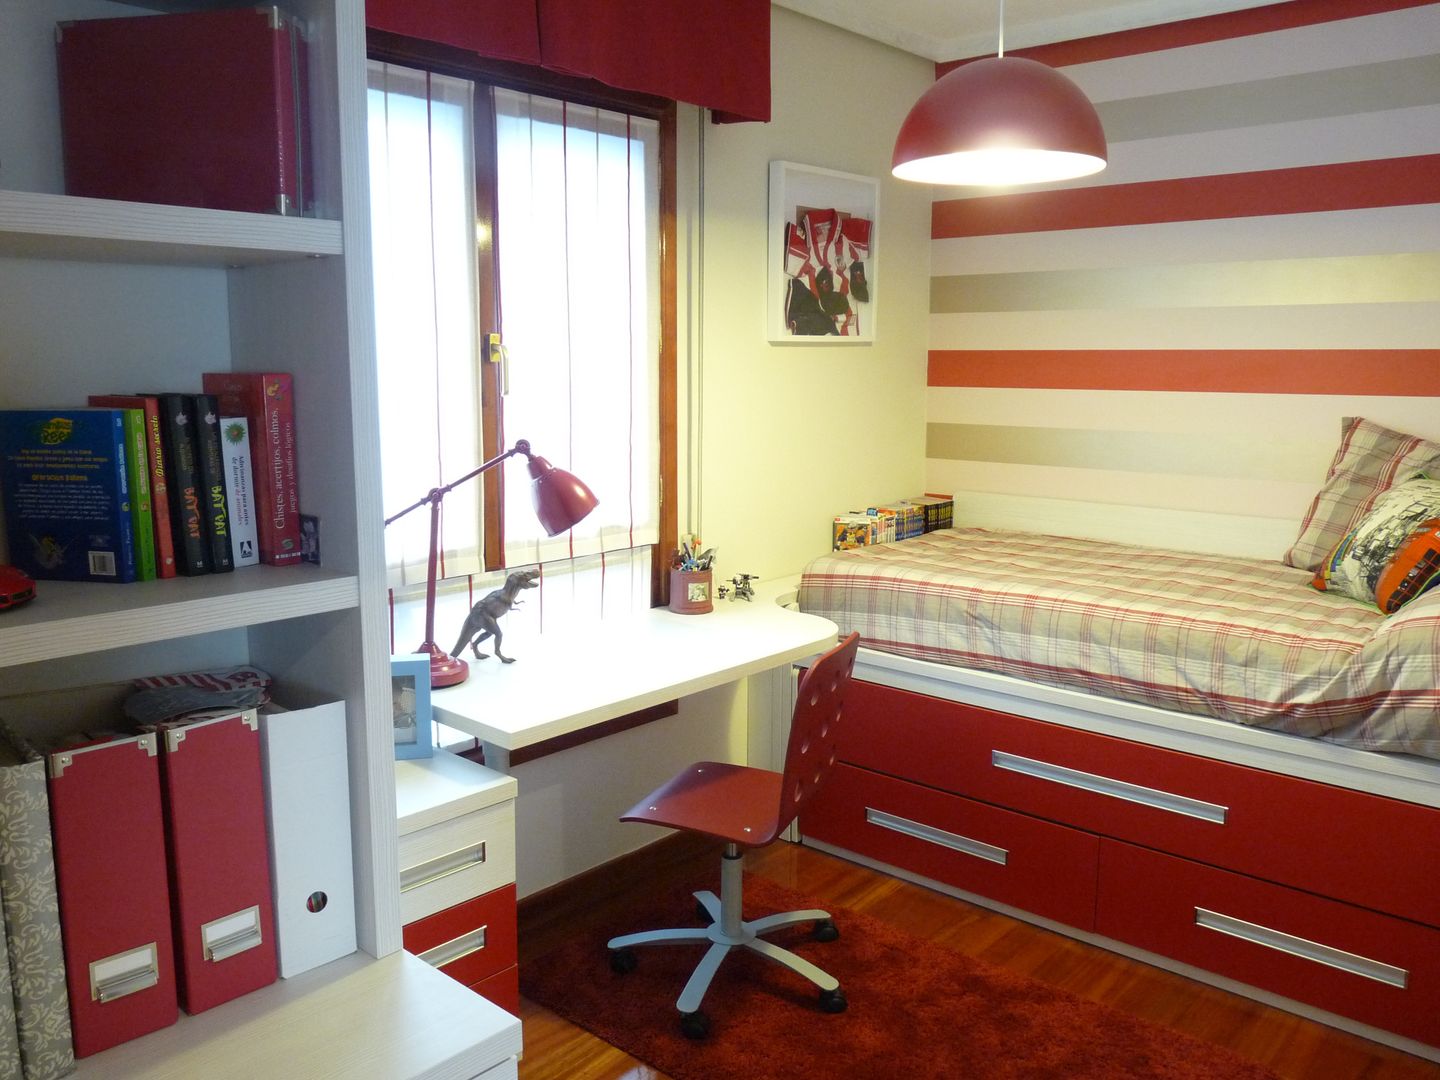 Una habitación juvenil para un joven gran seguidor del Athletic de Bilbao, Dec&You Dec&You Nowoczesny pokój dziecięcy